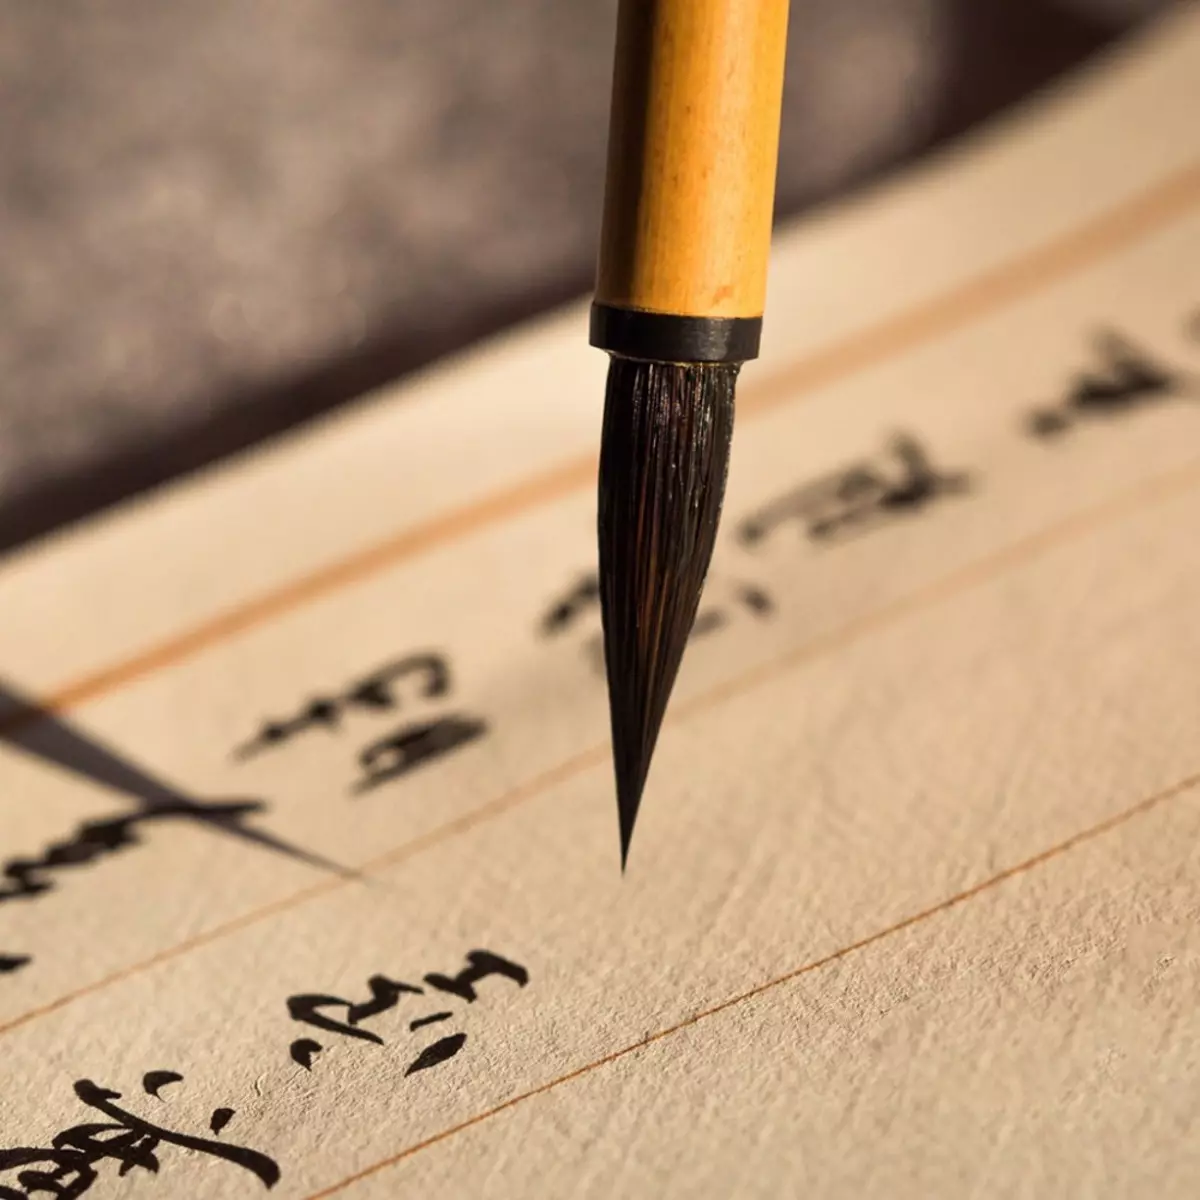 Calligraphie chinoise: dois-je connaître les hiéroglyphes pour participer à la calligraphie de la Chine? Styles pour débutants 19183_19